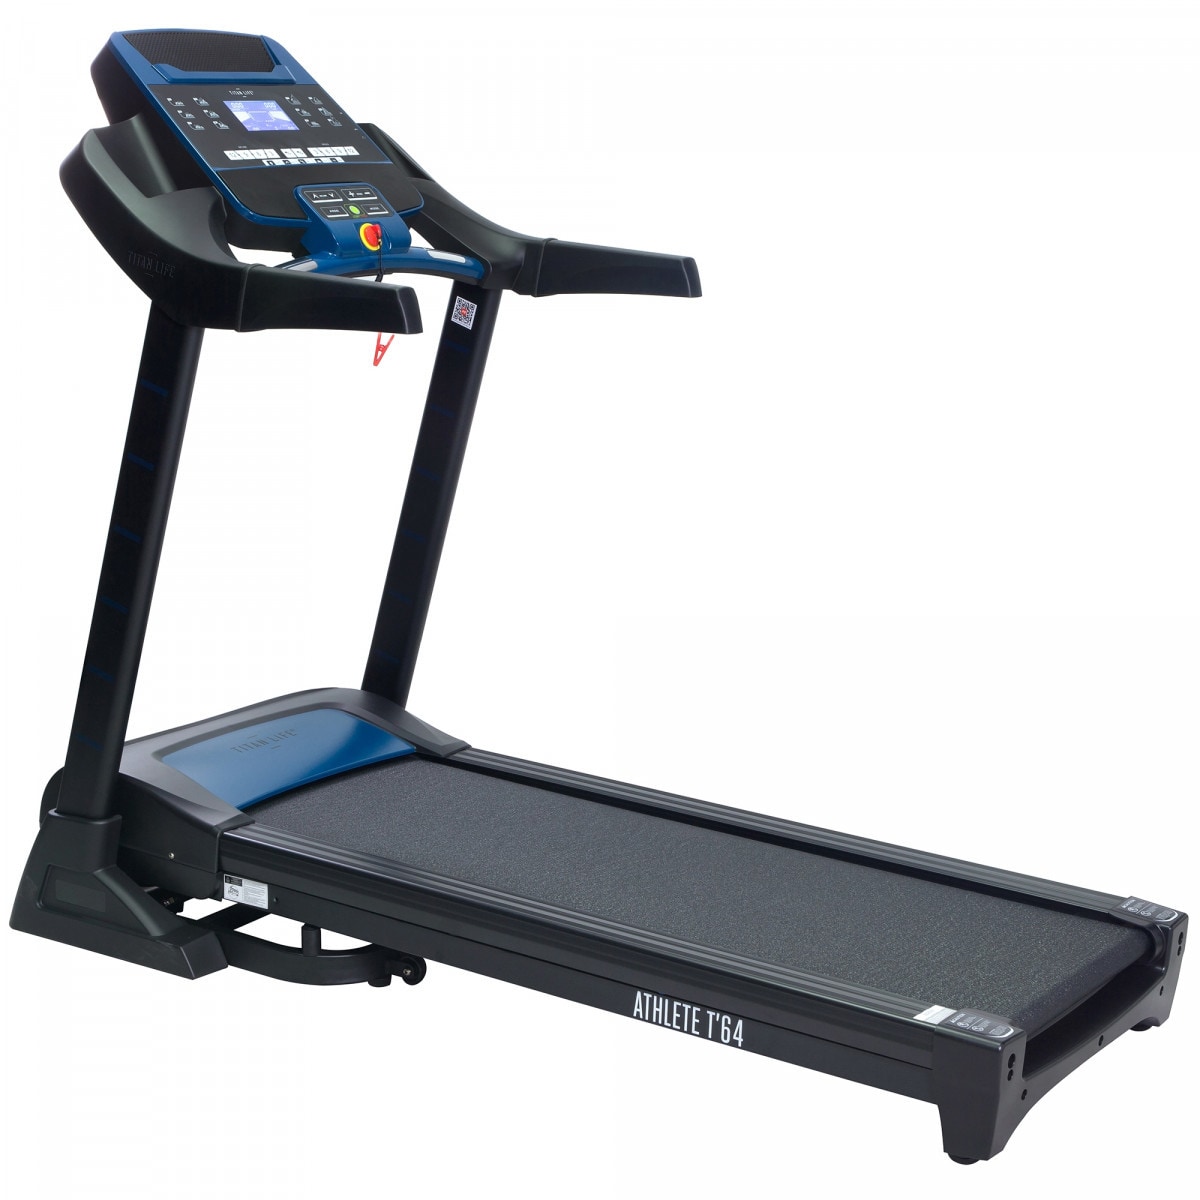 TITAN LIFE Treadmill ATHLETE T64 - Elkjøp